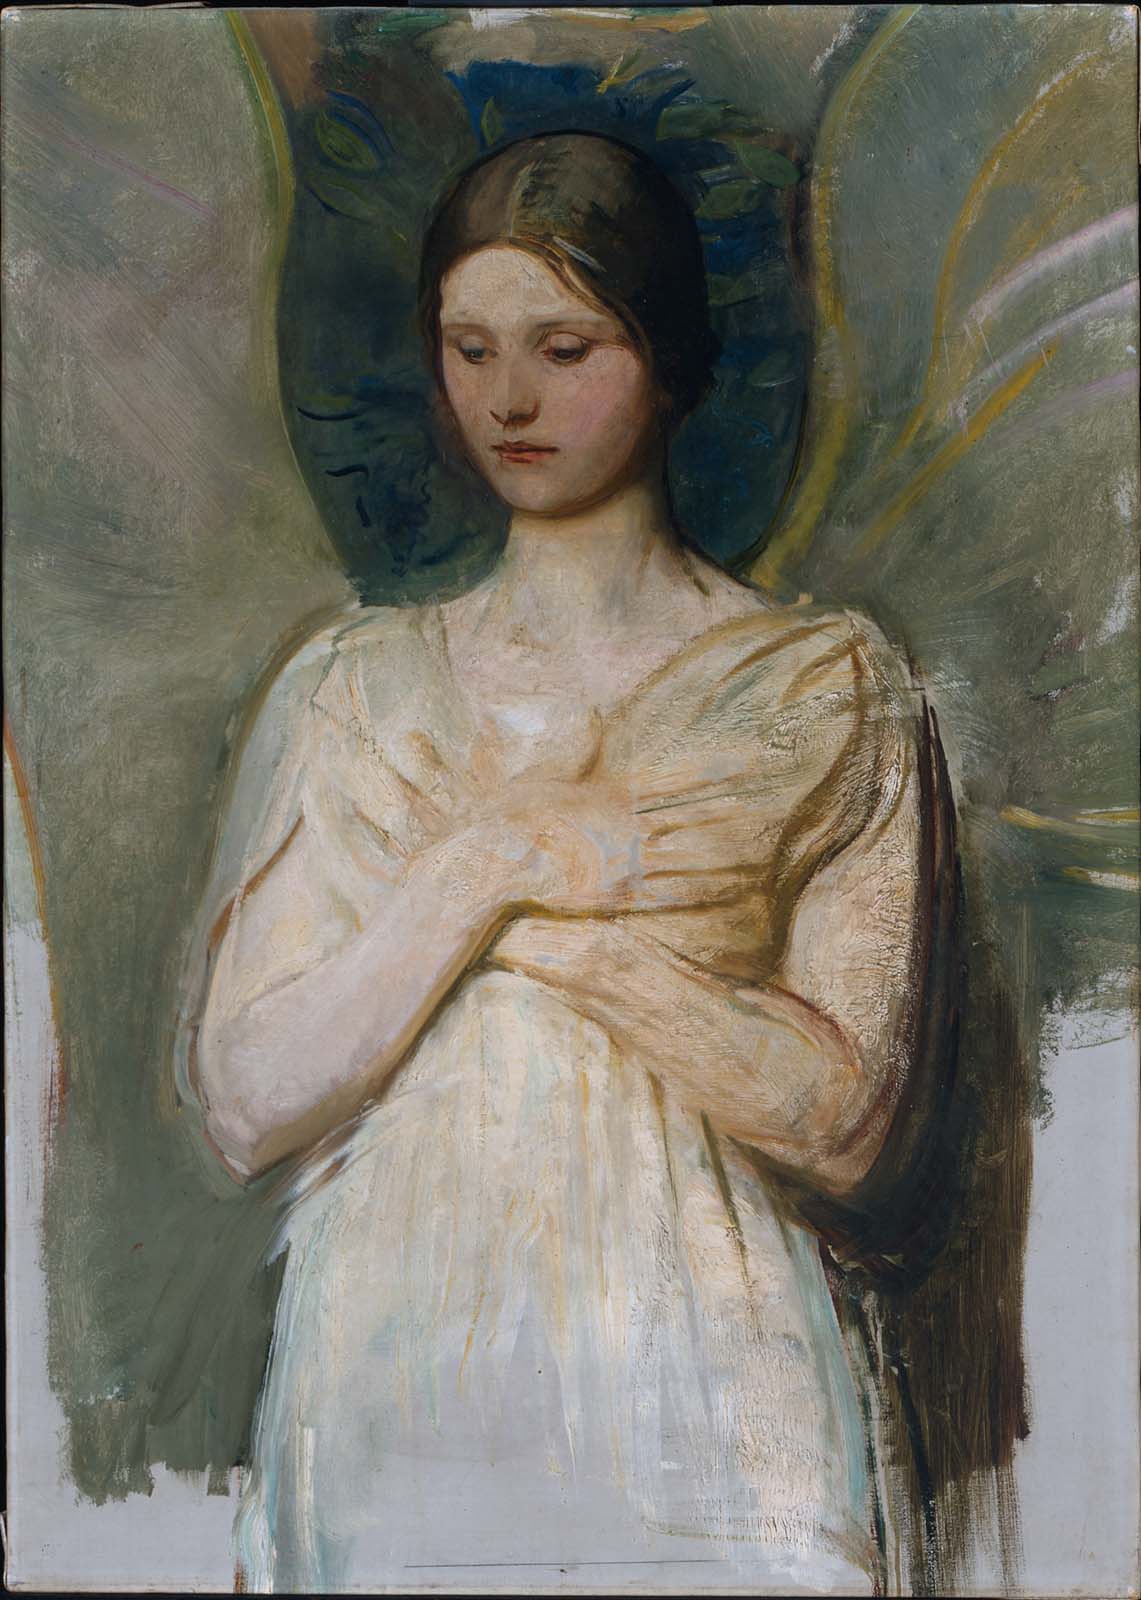 The Angel by Abbott Handerson Thayer